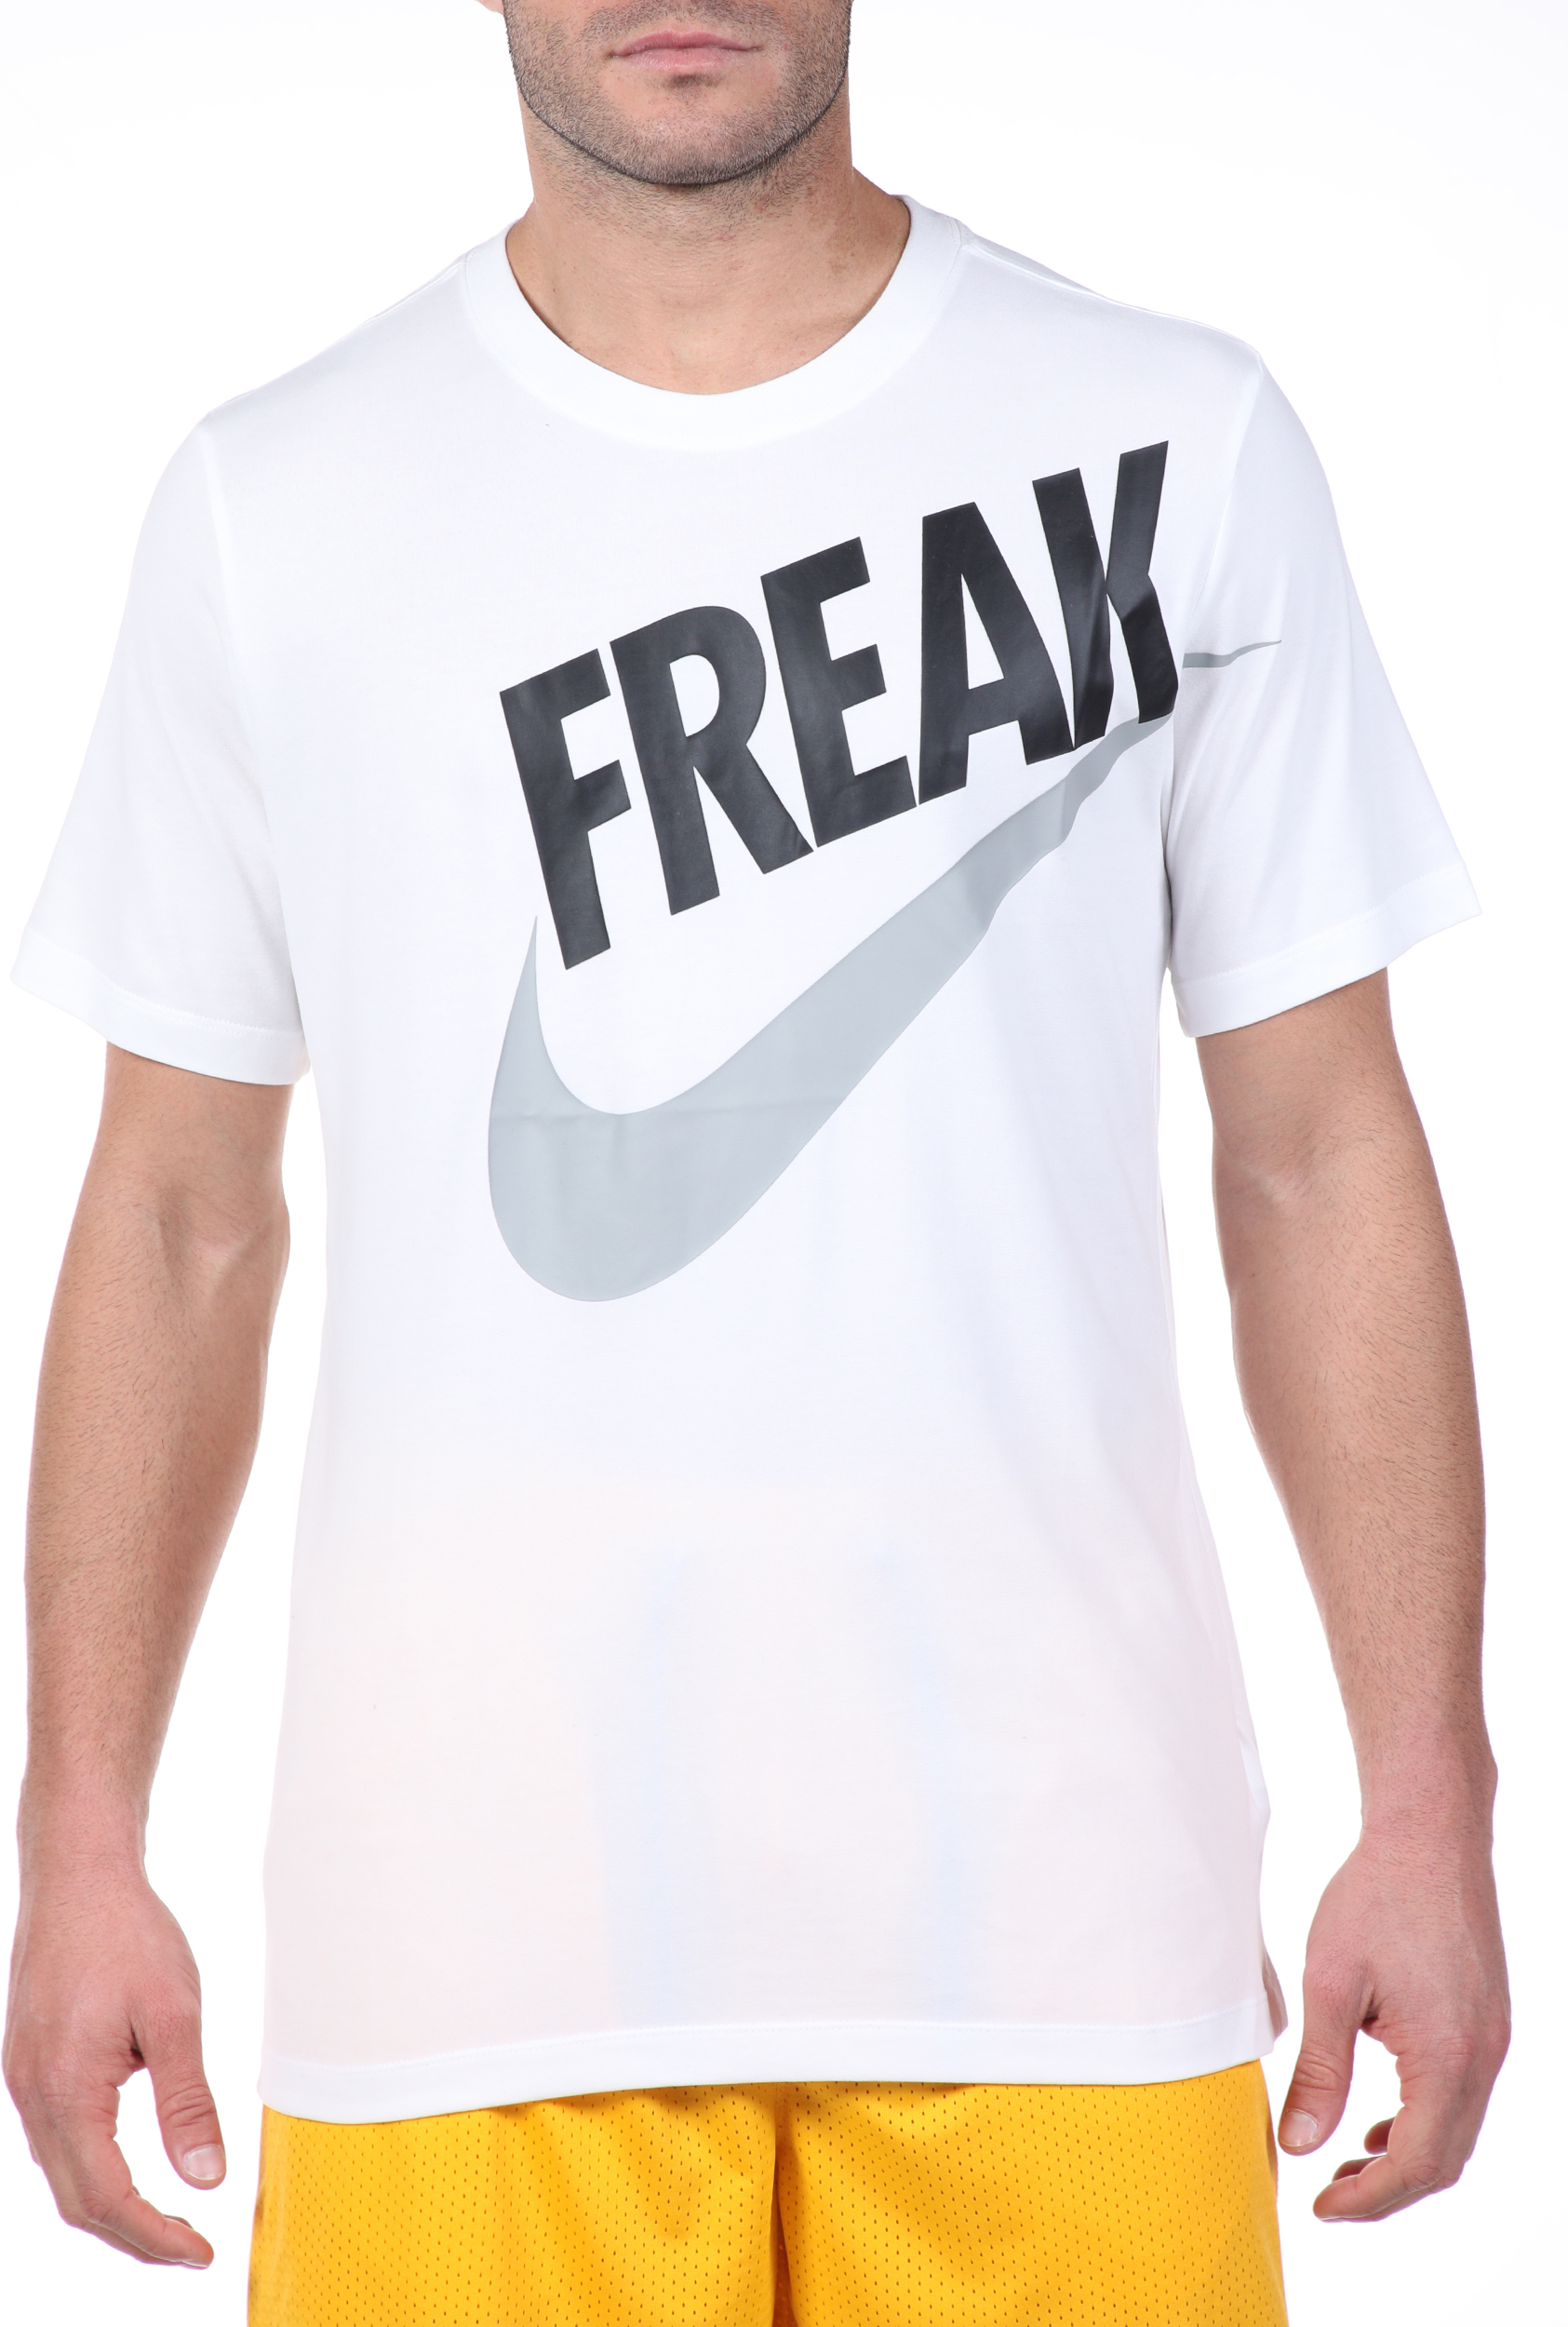 Ανδρικά/Ρούχα/Αθλητικά/T-shirt NIKE - Ανδρική μπλούζα NIKE GA M NK DRY TEE FREAK λευκή